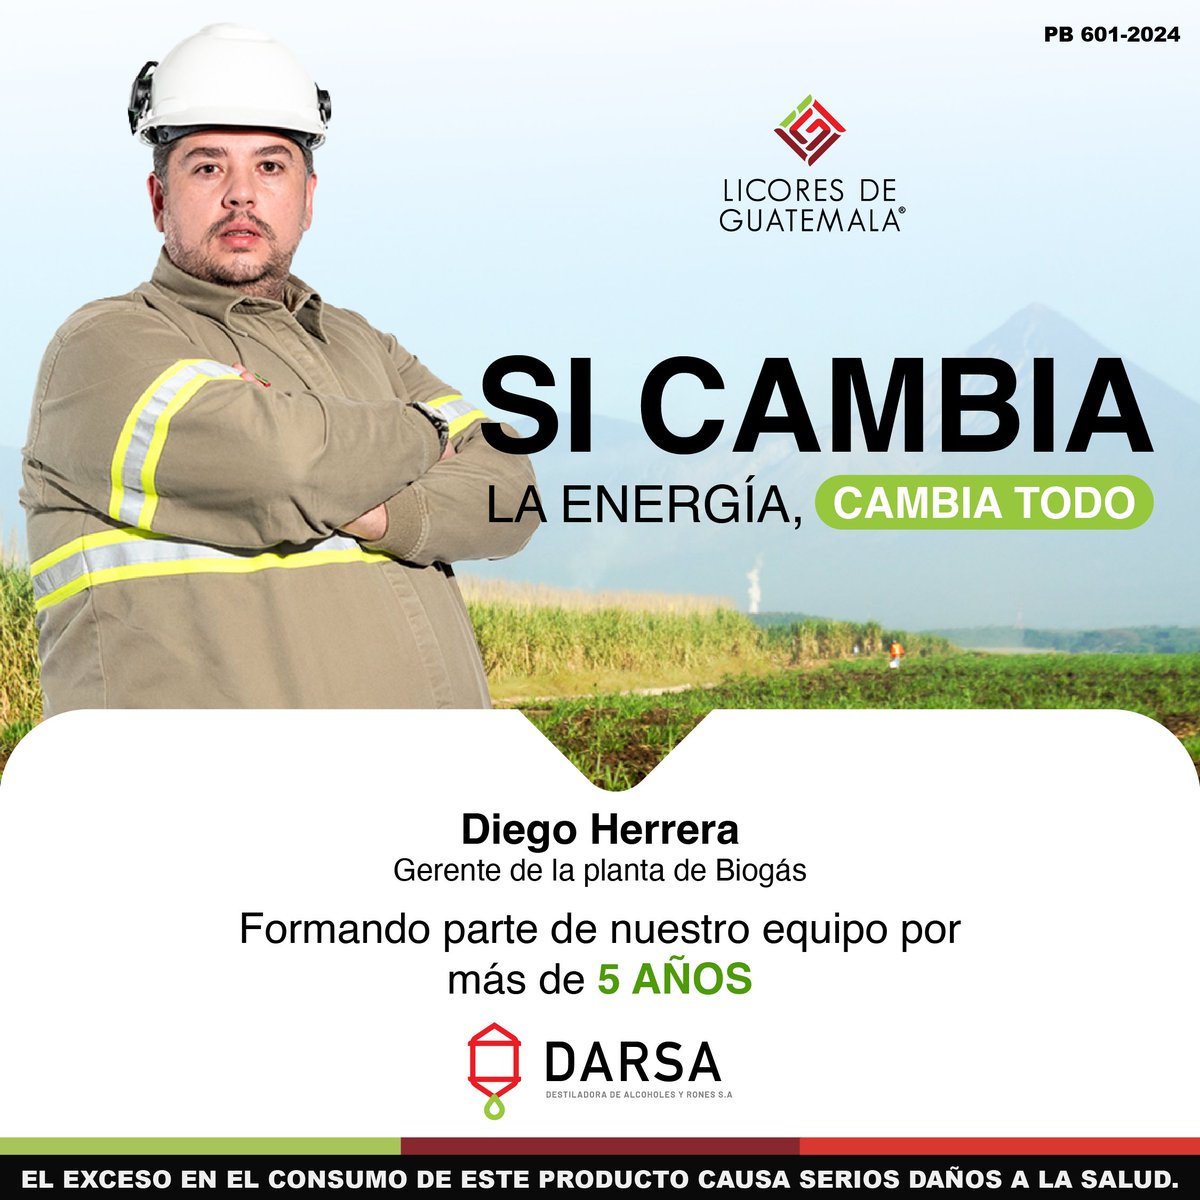 Diego Herrera, nuestro gerente de la planta de biogás, lleva más de 5 años formando parte de nuestro gran equipo, aportando su sabiduría para utilizar fuentes limpias de energía.
#LicoresDeGuatemala  #Sostenibilidad #EnergíaRenovable #ResponsabilidadAmbiental